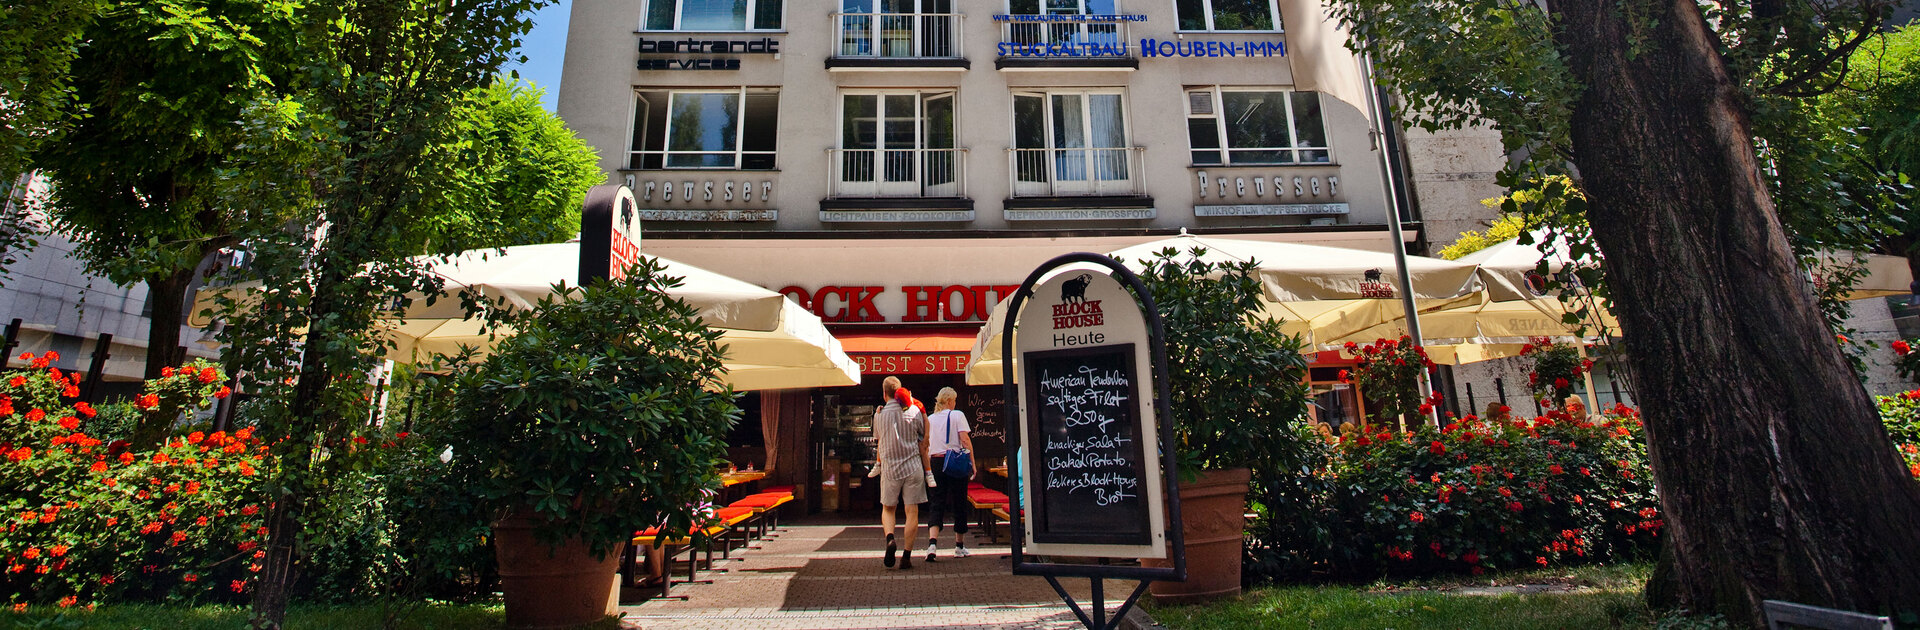 Eingang zum BLOCK HOUSE Restaurant in München